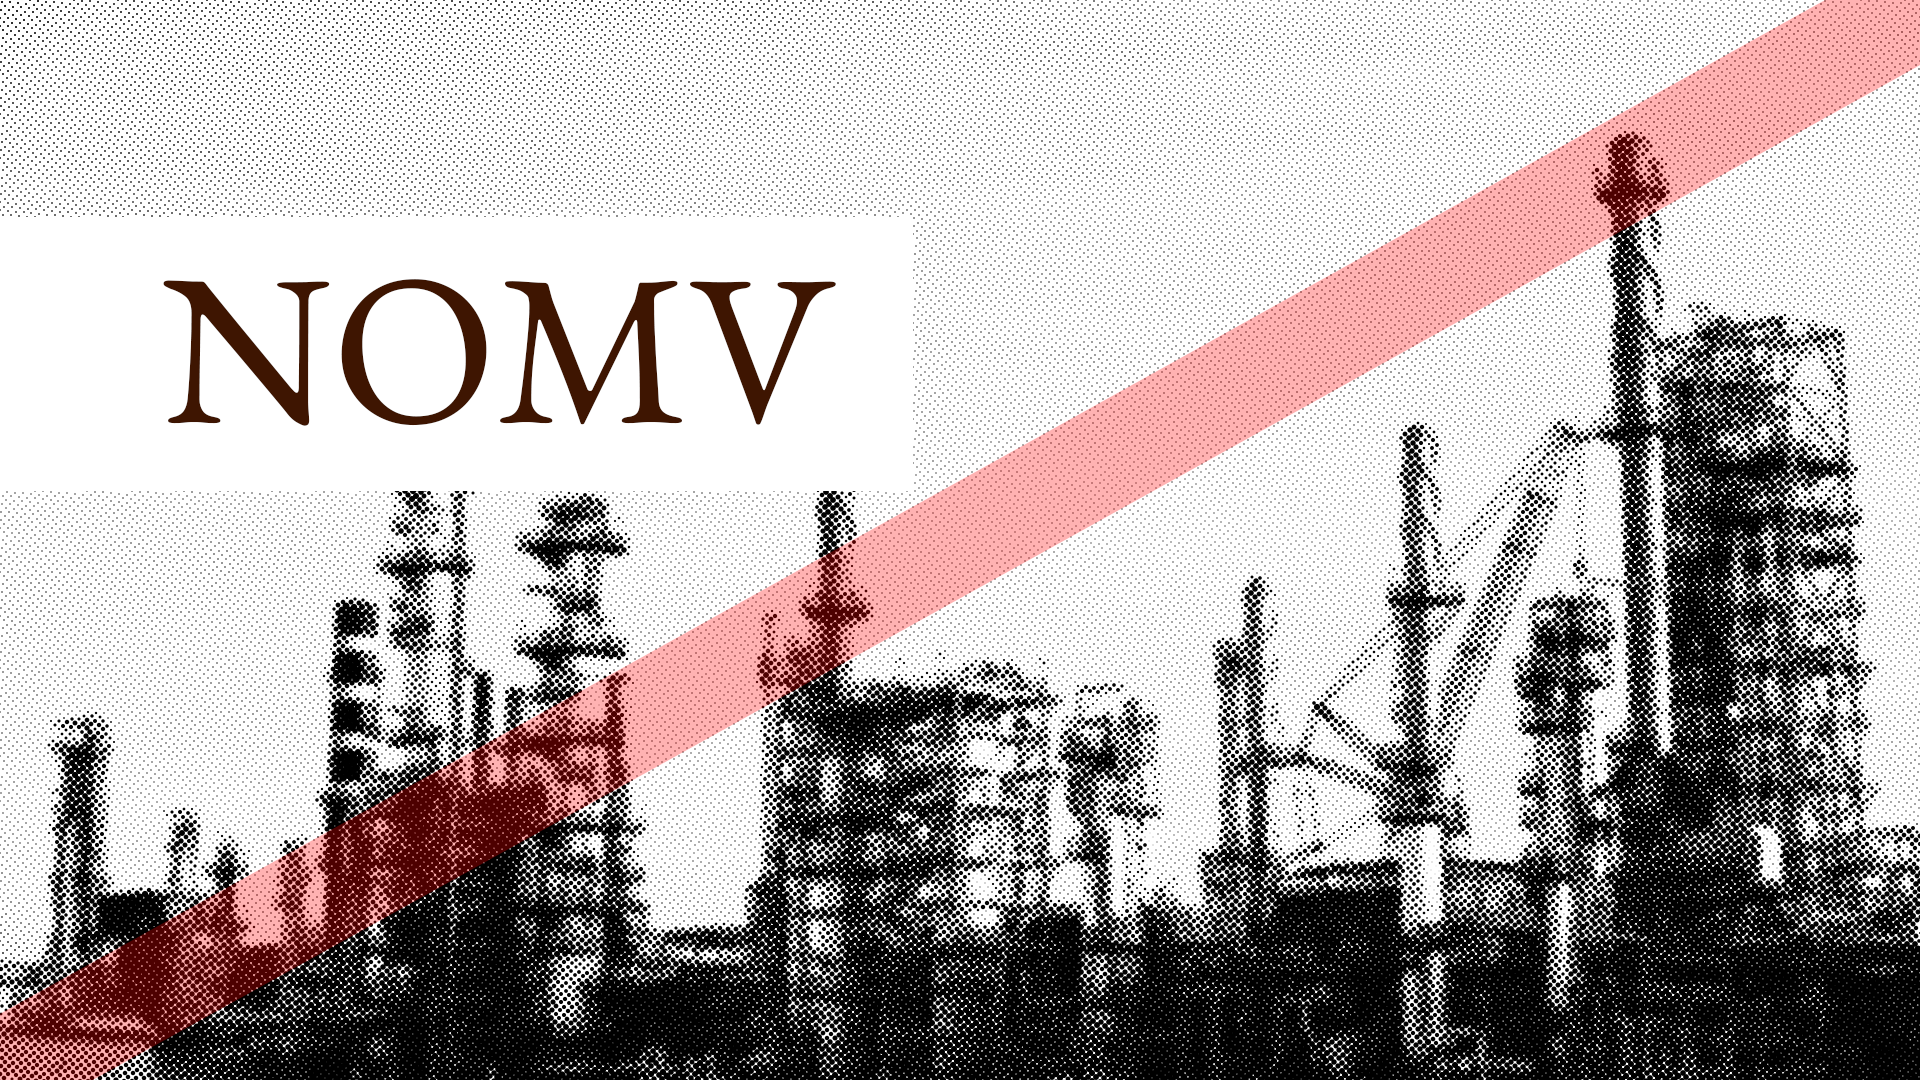 NOMV - We do not buy OMV - despite good Obermatt ranks